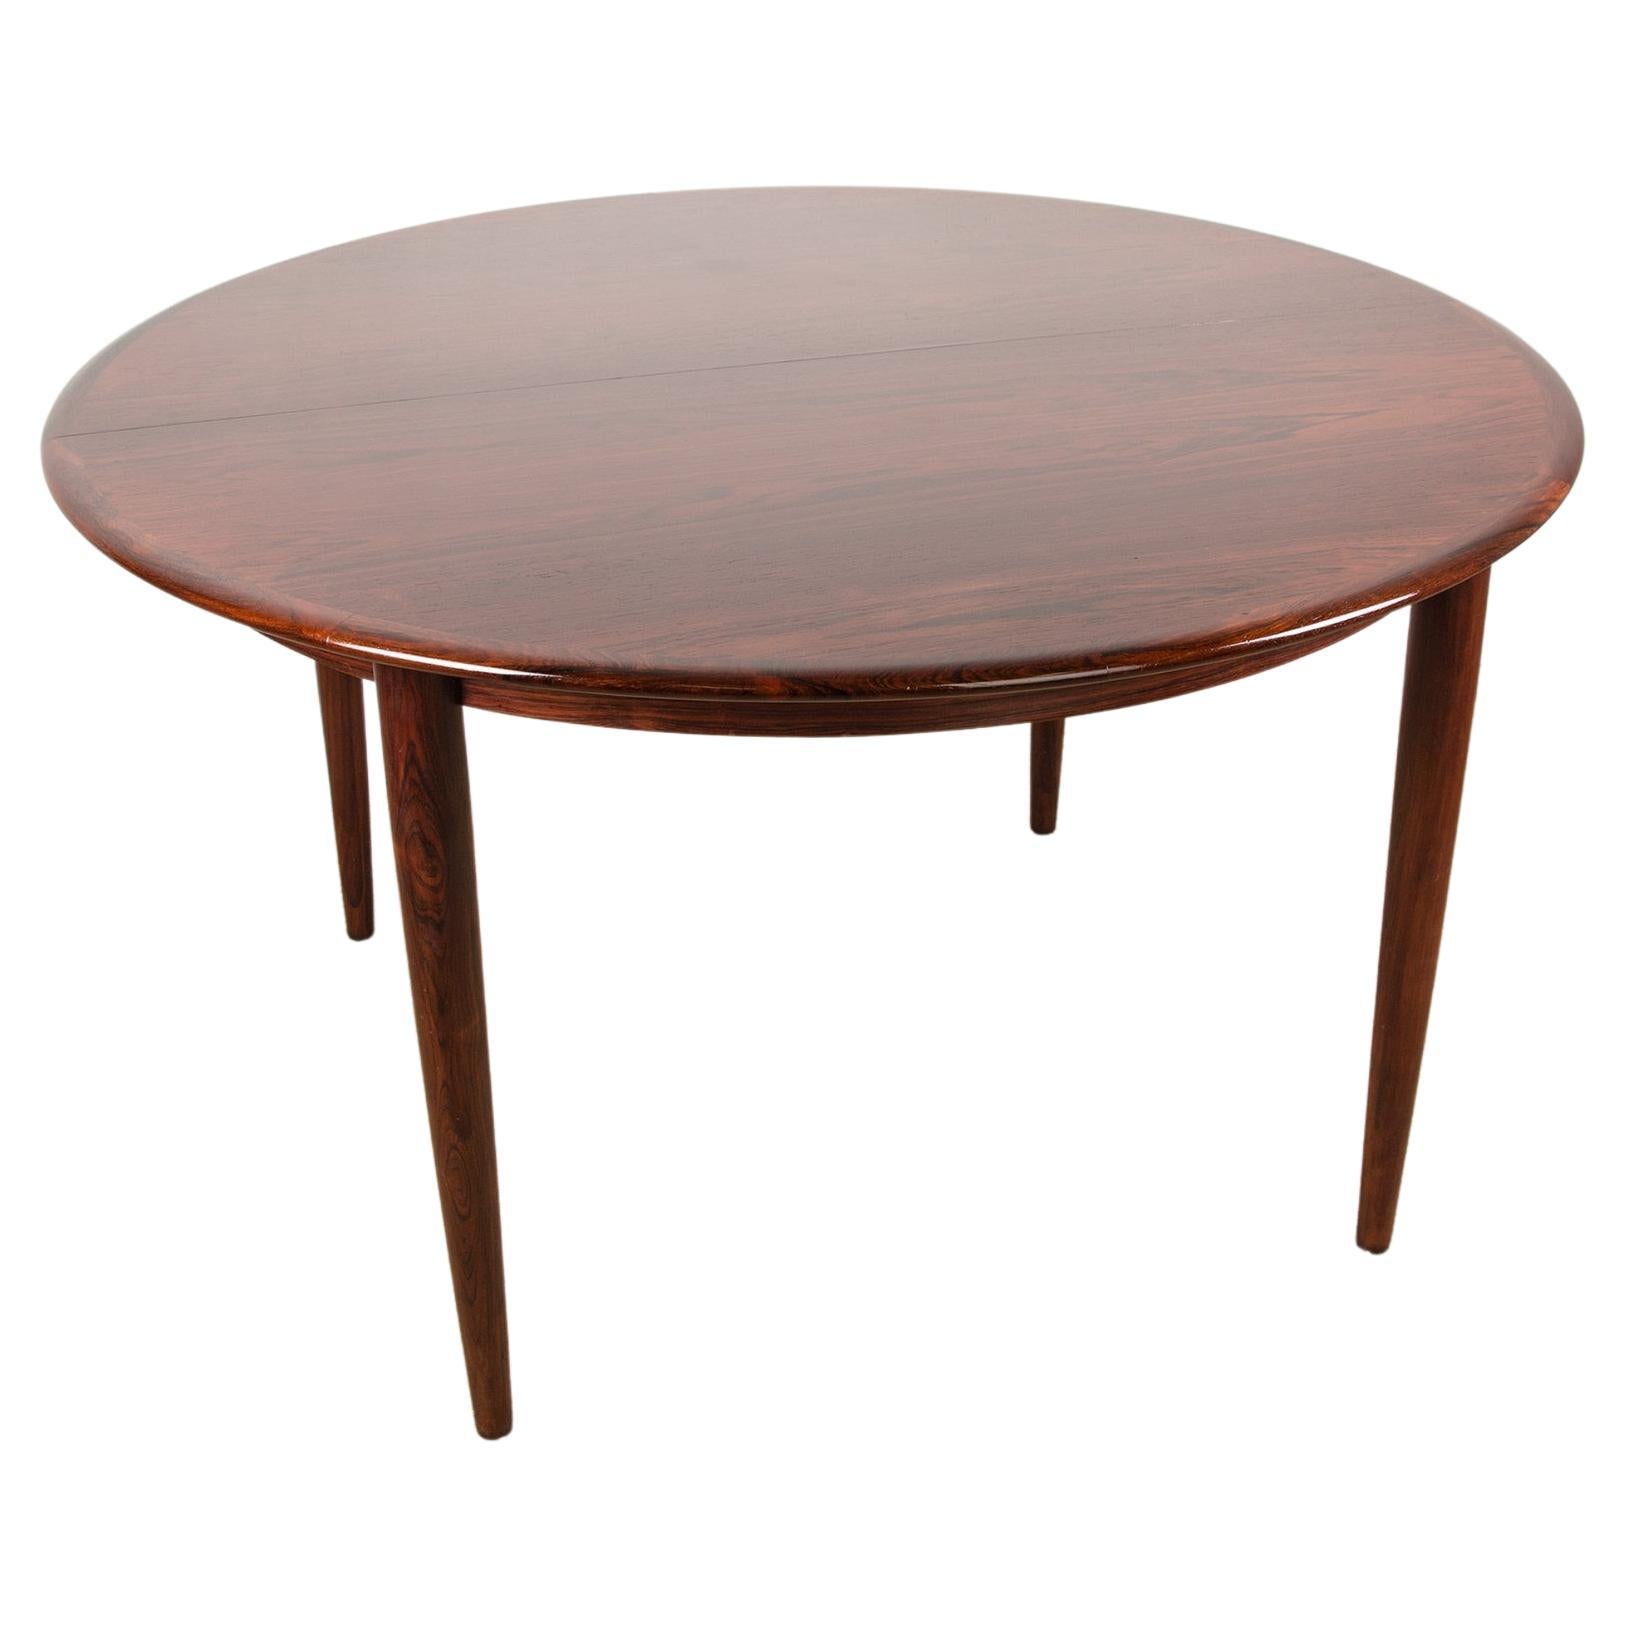 Table de salle à manger danoise extensible en bois de rose Rio, modèle 55, Arne Vodder pour Sibast.